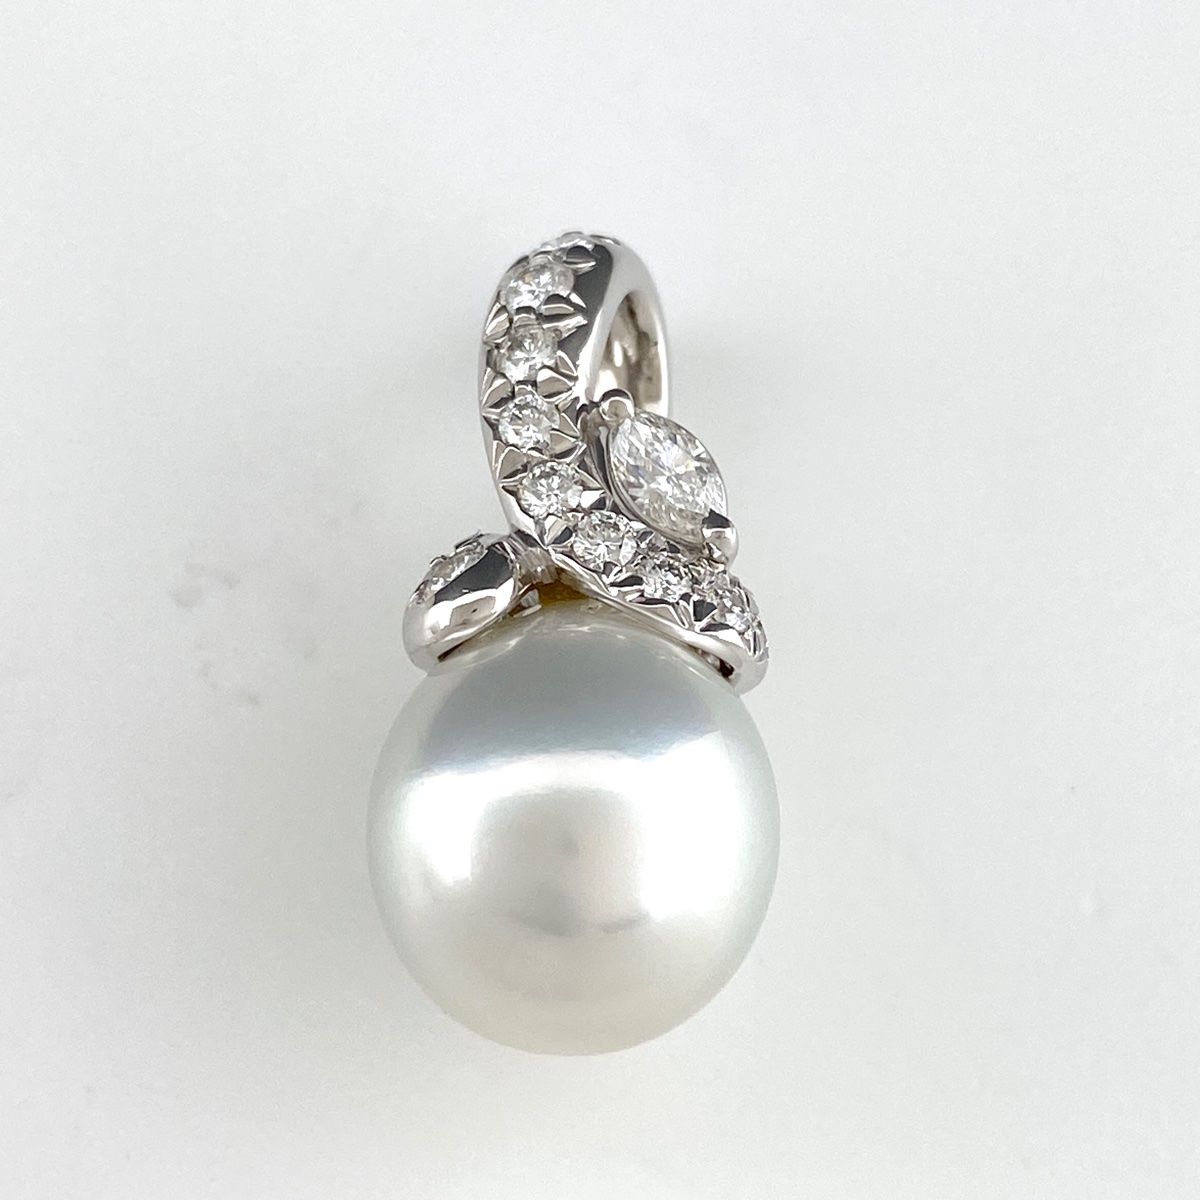 パール ペンダントトップ プラチナ 真珠 ダイヤモンド メレダイヤ